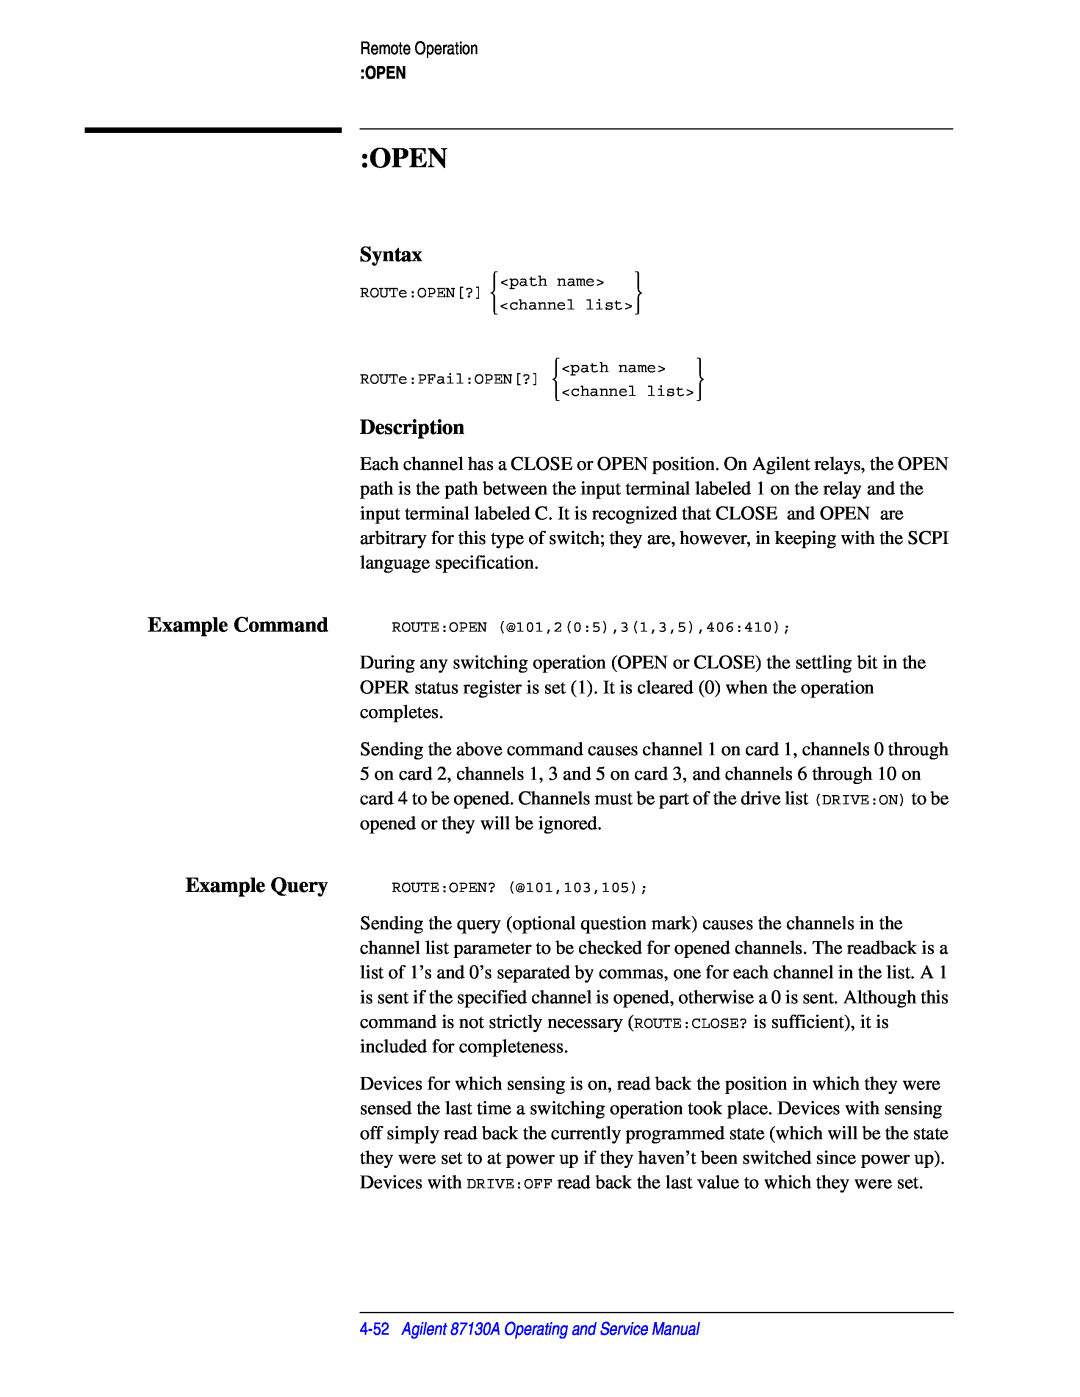 Agilent Technologies 87130A manual Open, Syntax, Description 